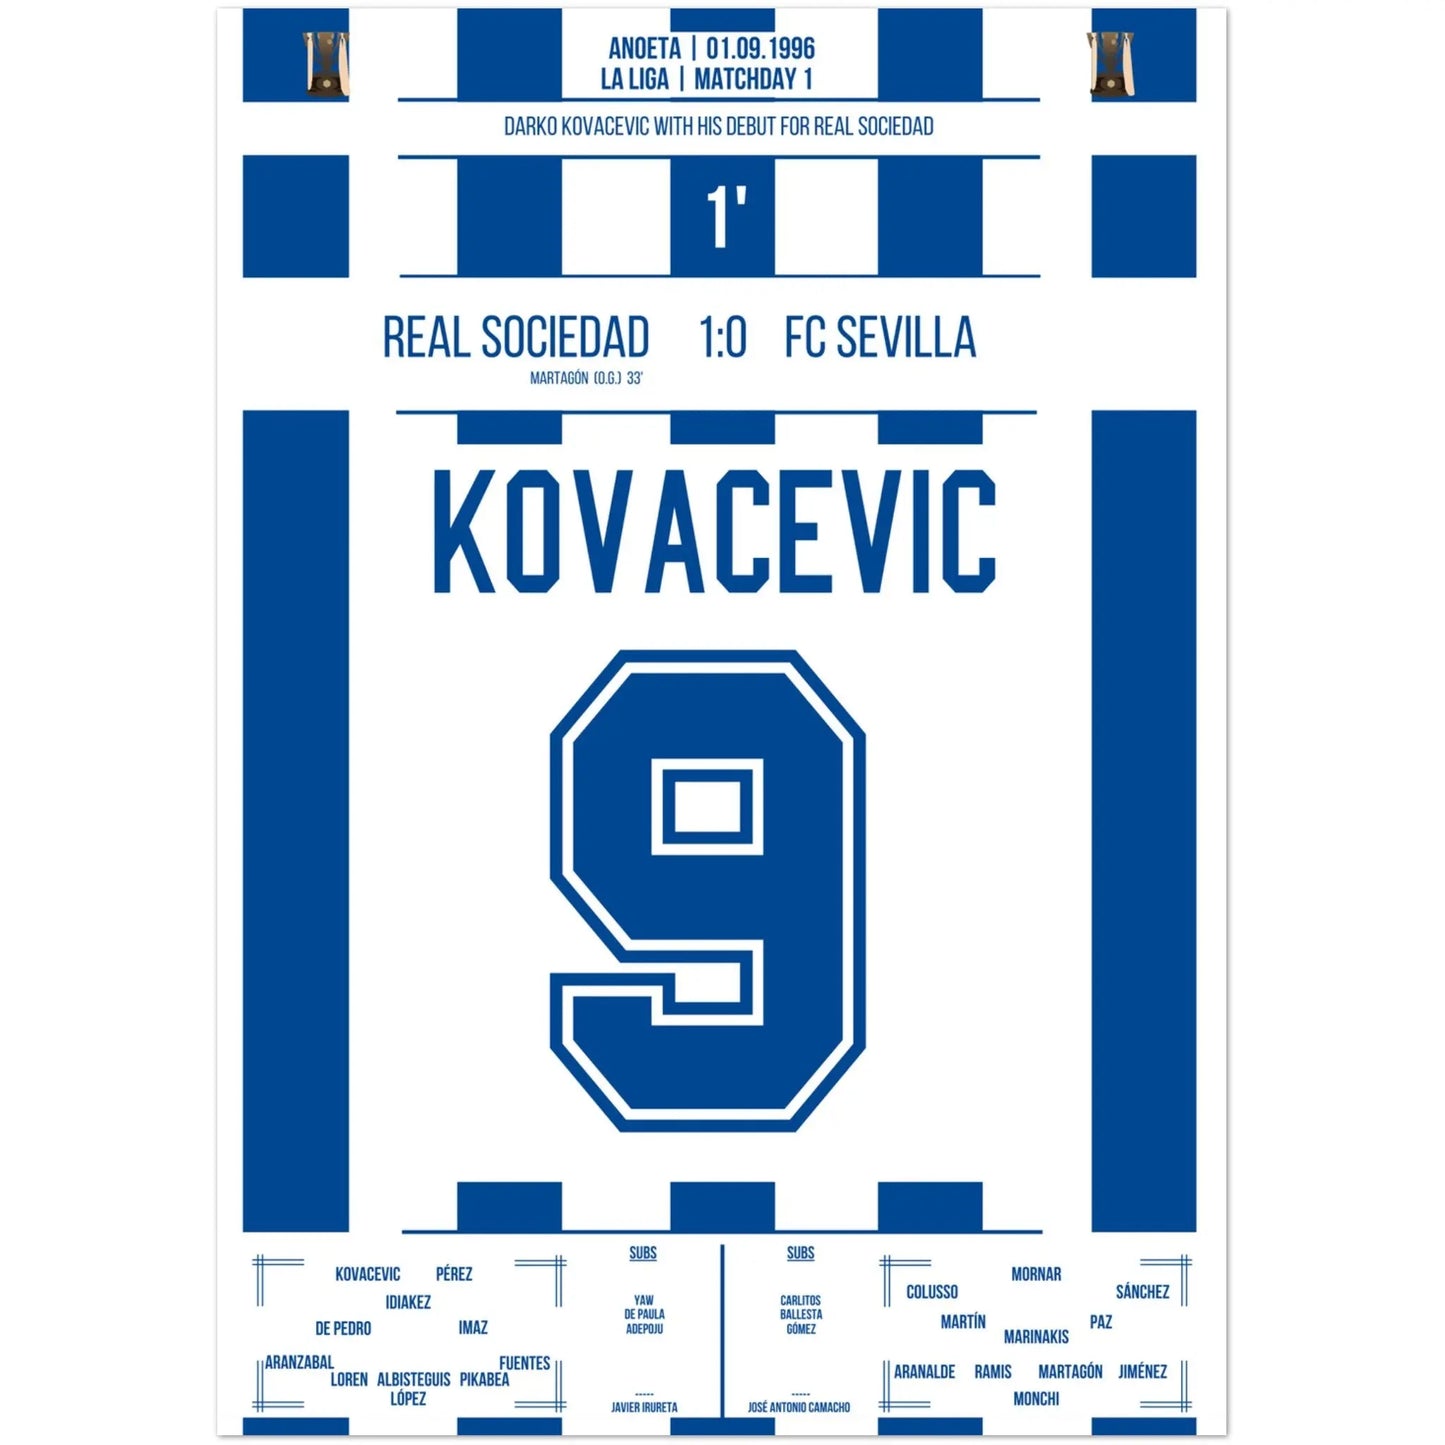 Darko Kovacevic debutó con la Real Sociedad en 1996